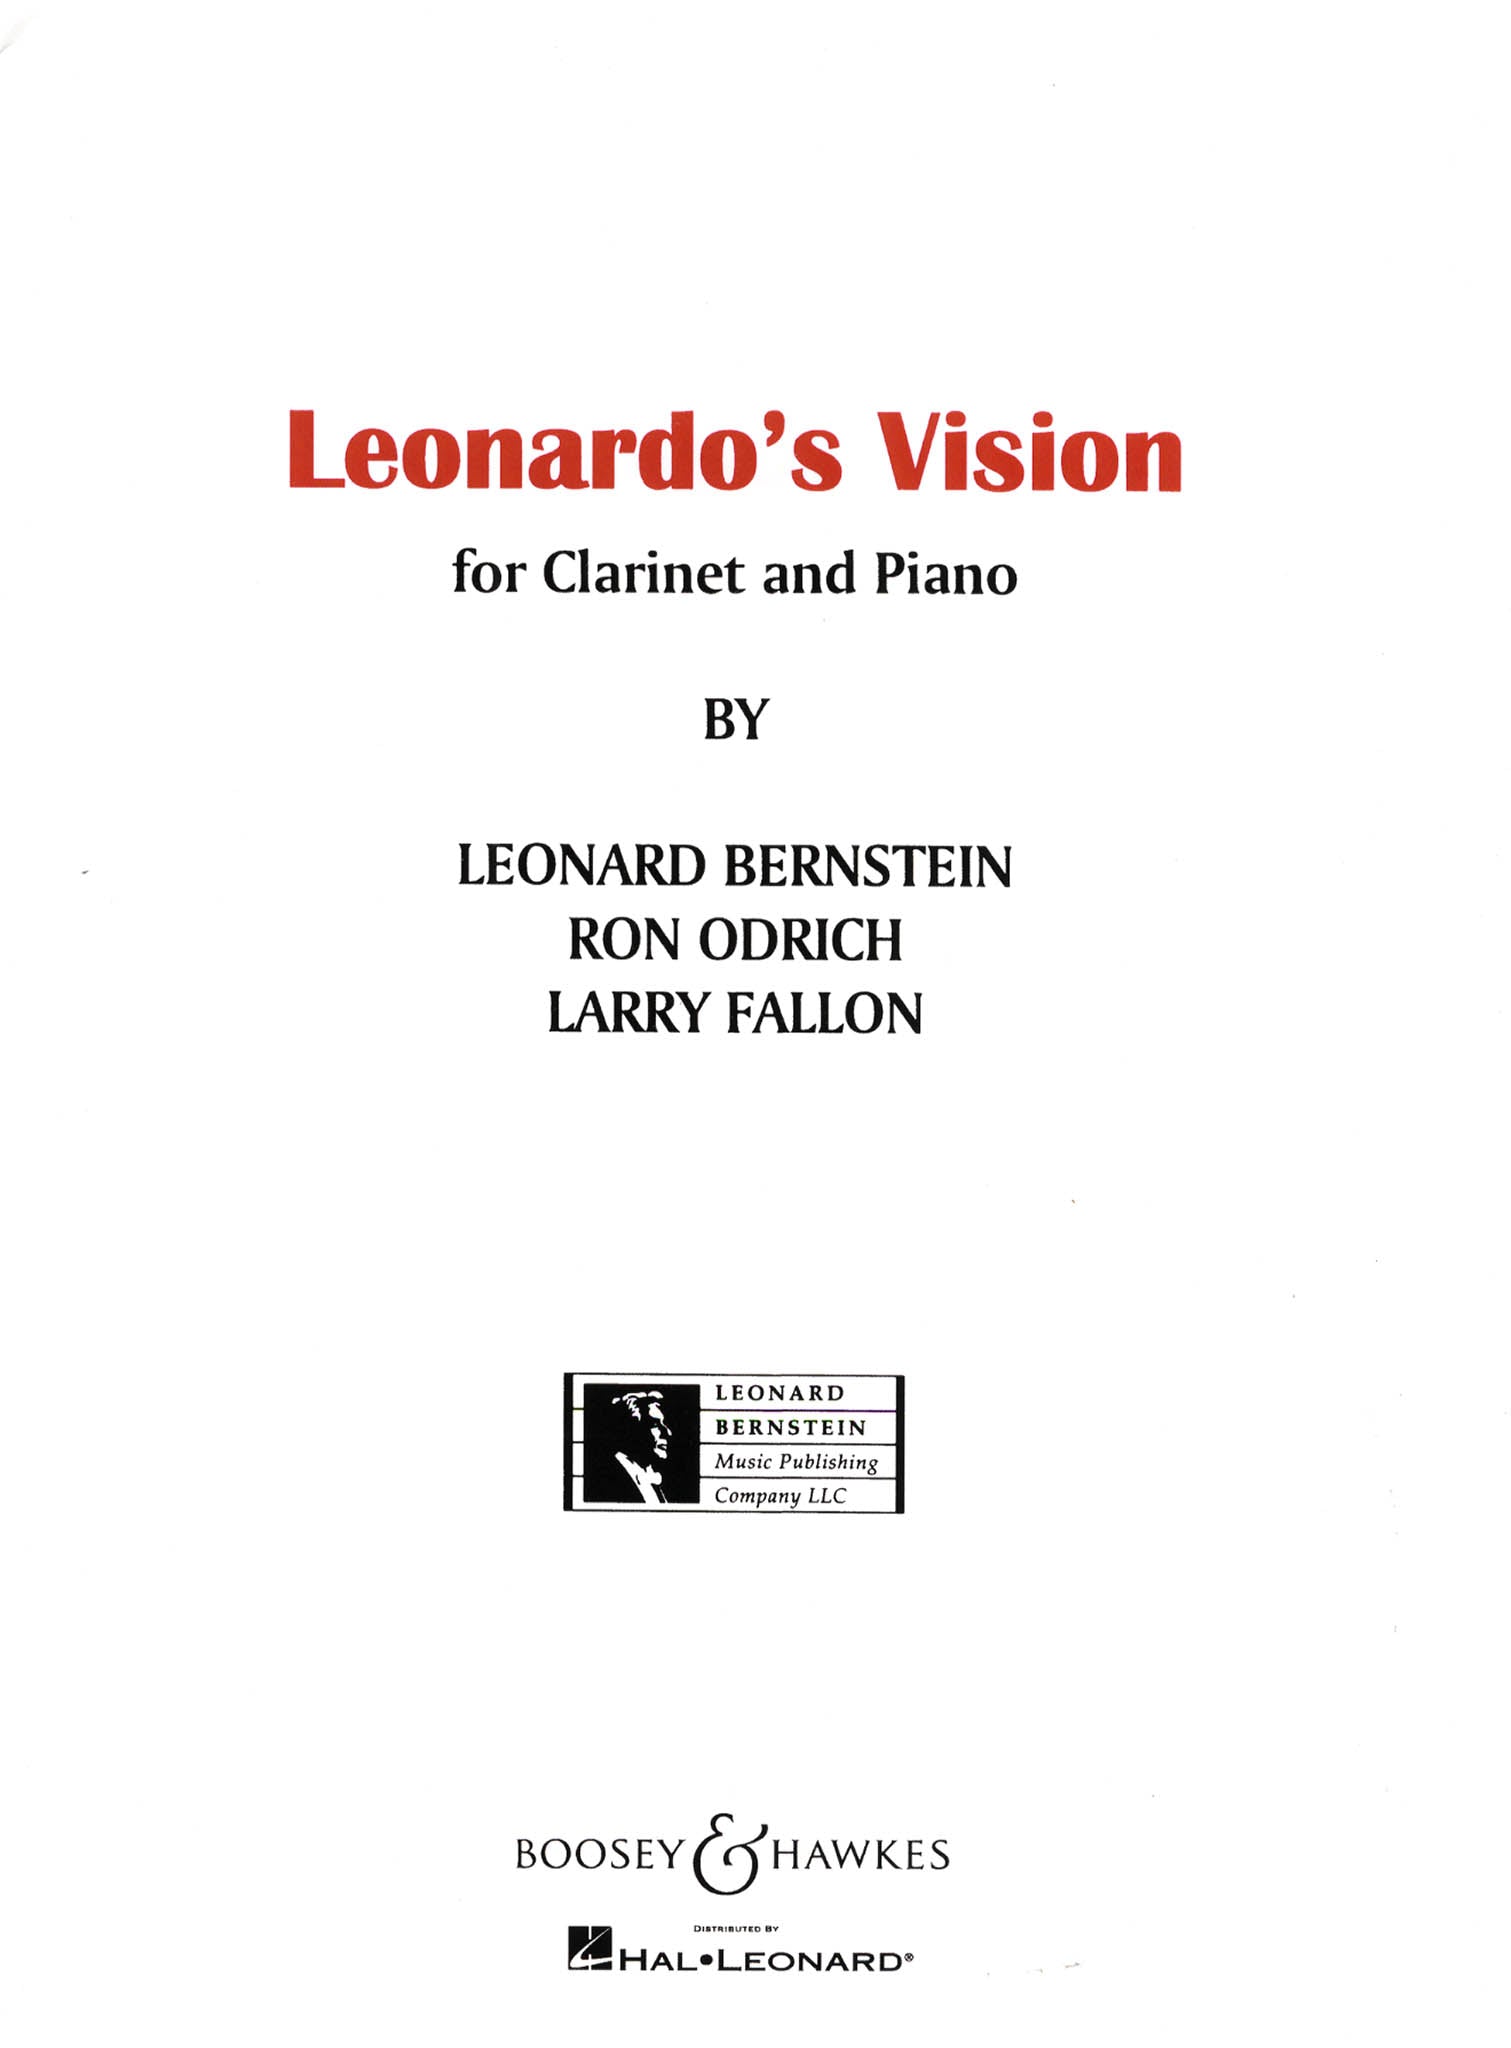 Leonardo’s Vision Bernstein Odrich Fallon for clarinet and piano cover